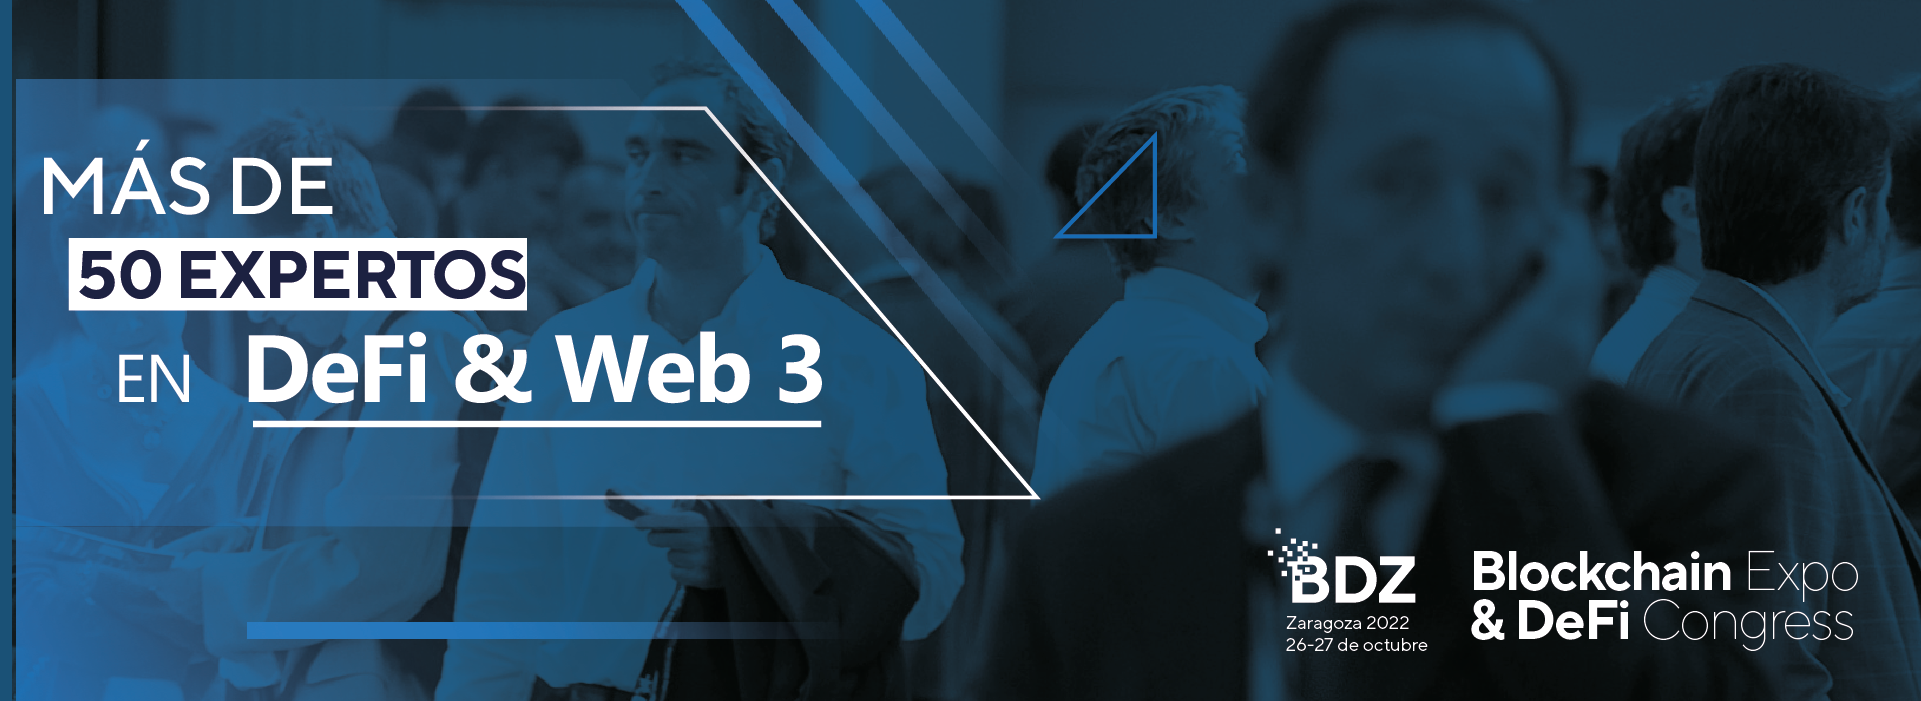 Más de 50 expertos en DeFi & Web 3 participarán en el congreso de Finanzas Descentralizadas, Criptomonedas y Blockchain de Zaragoza